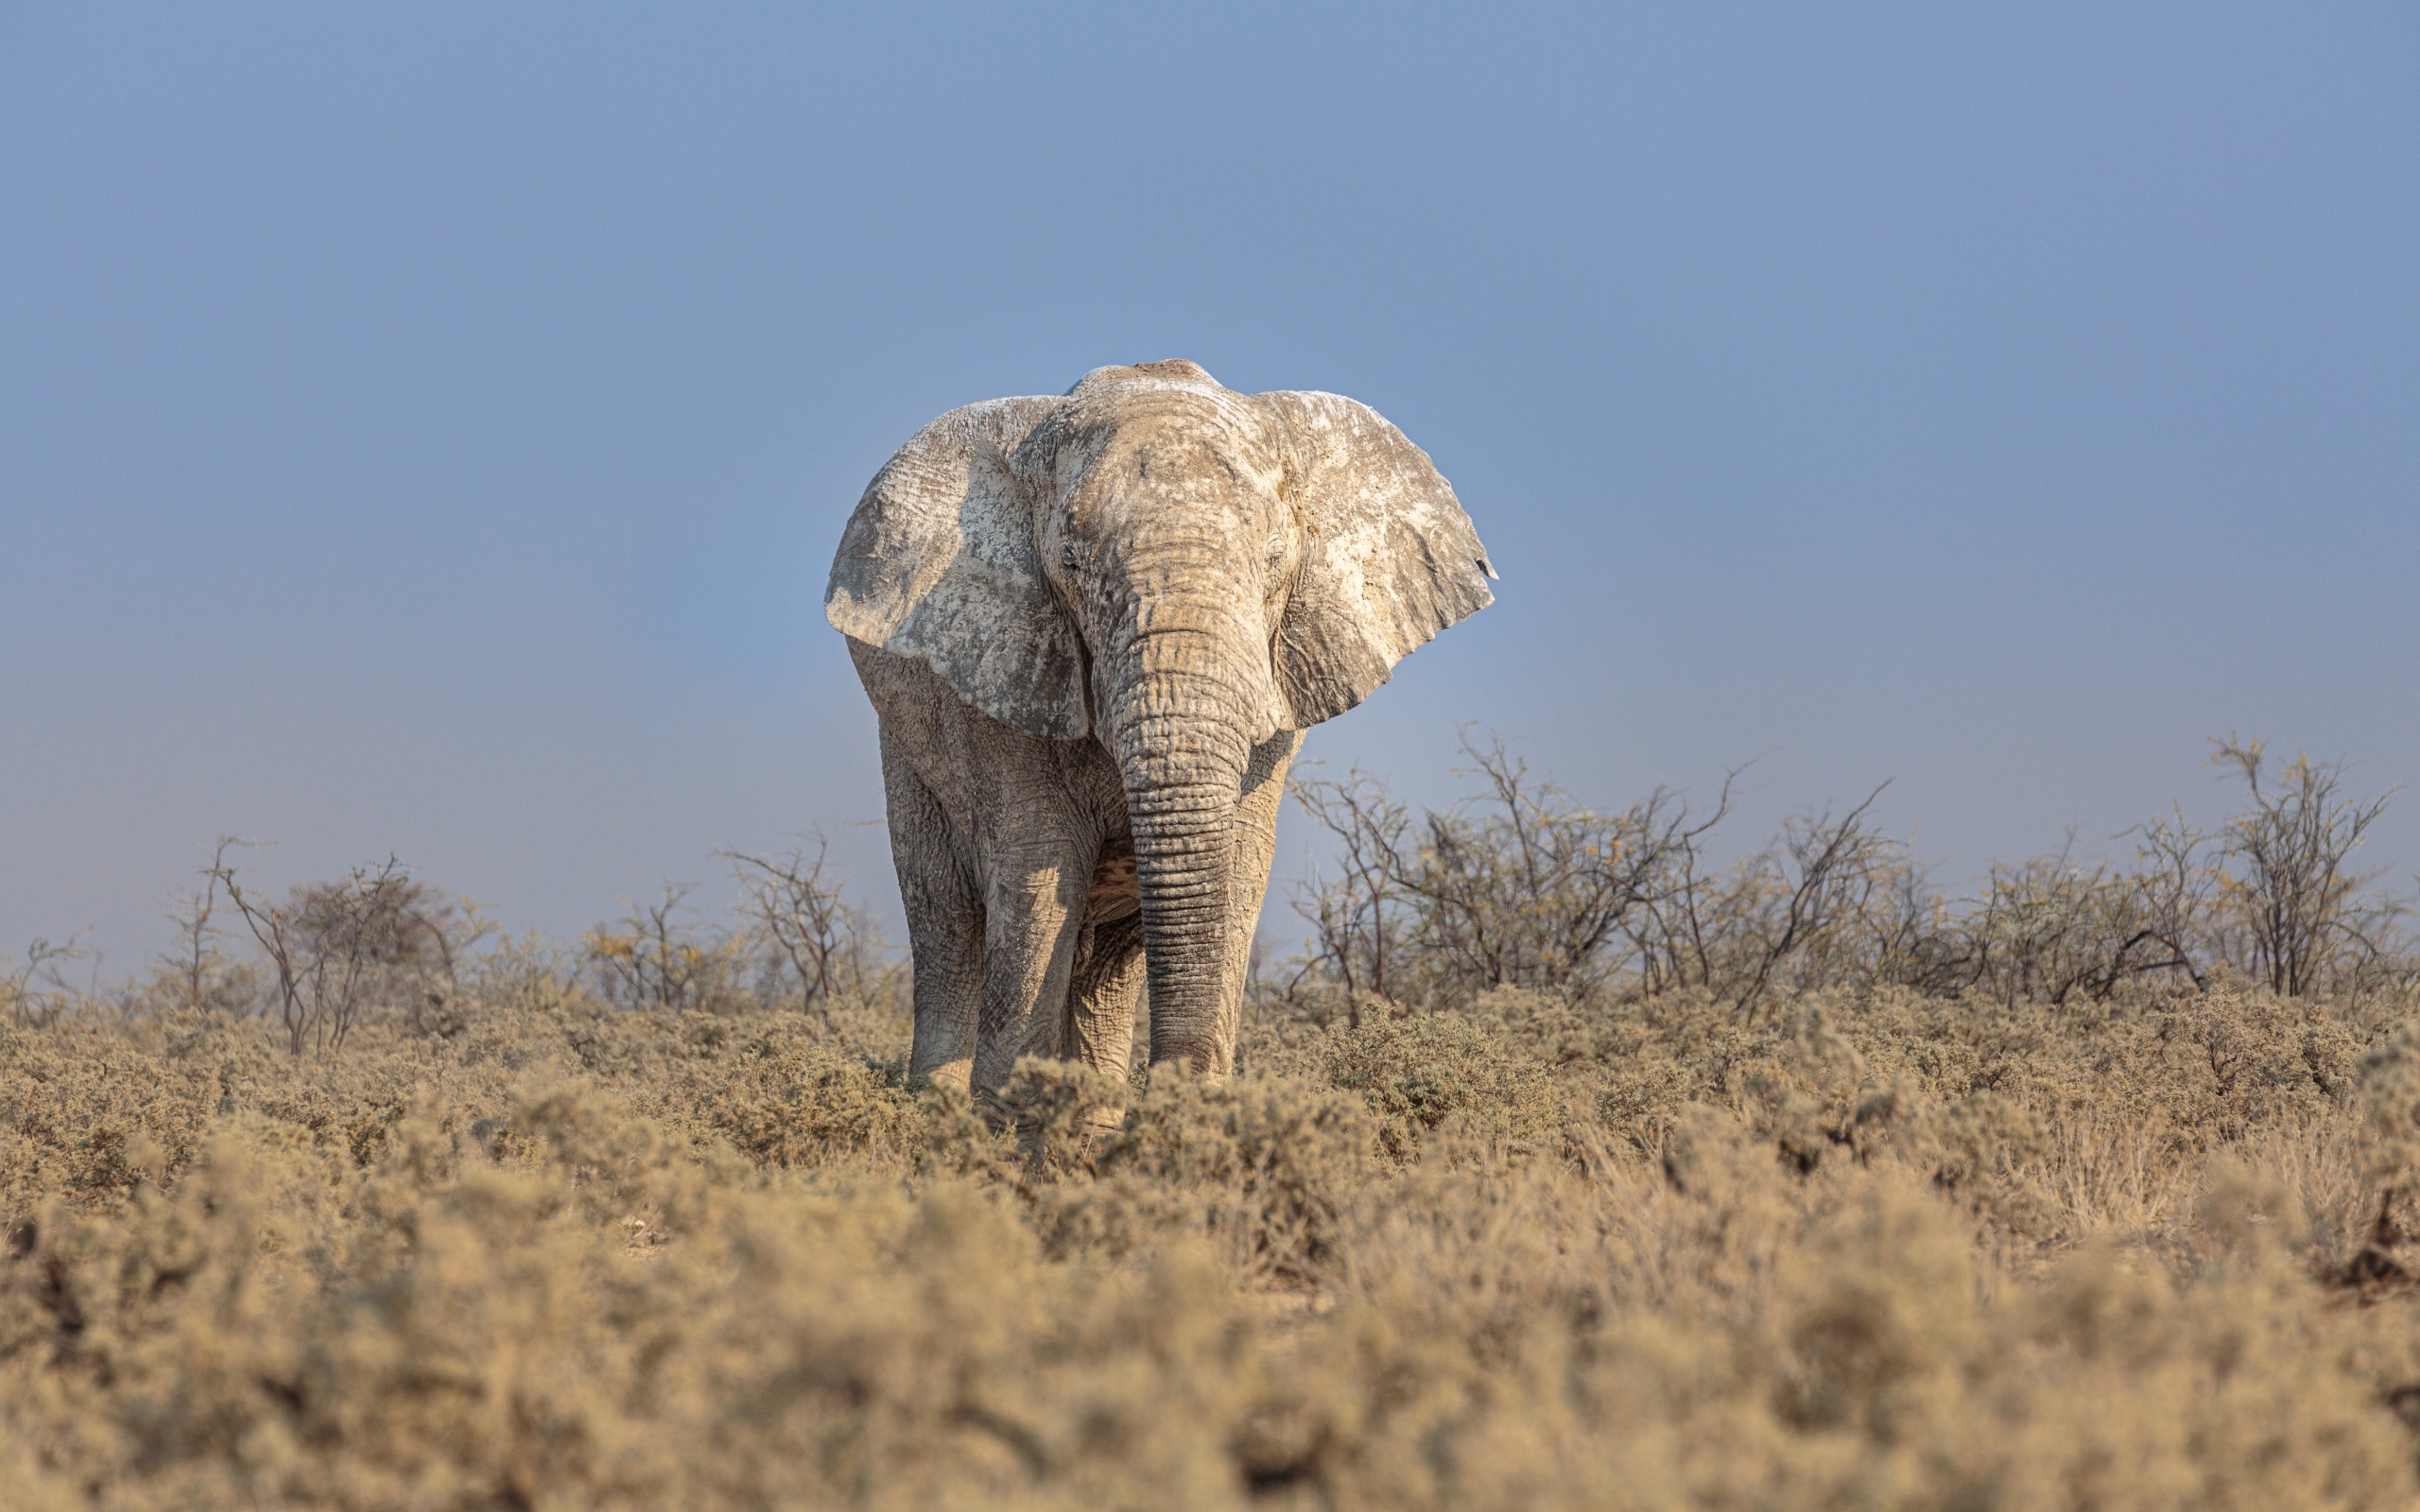 Big elephant walks on the savannah